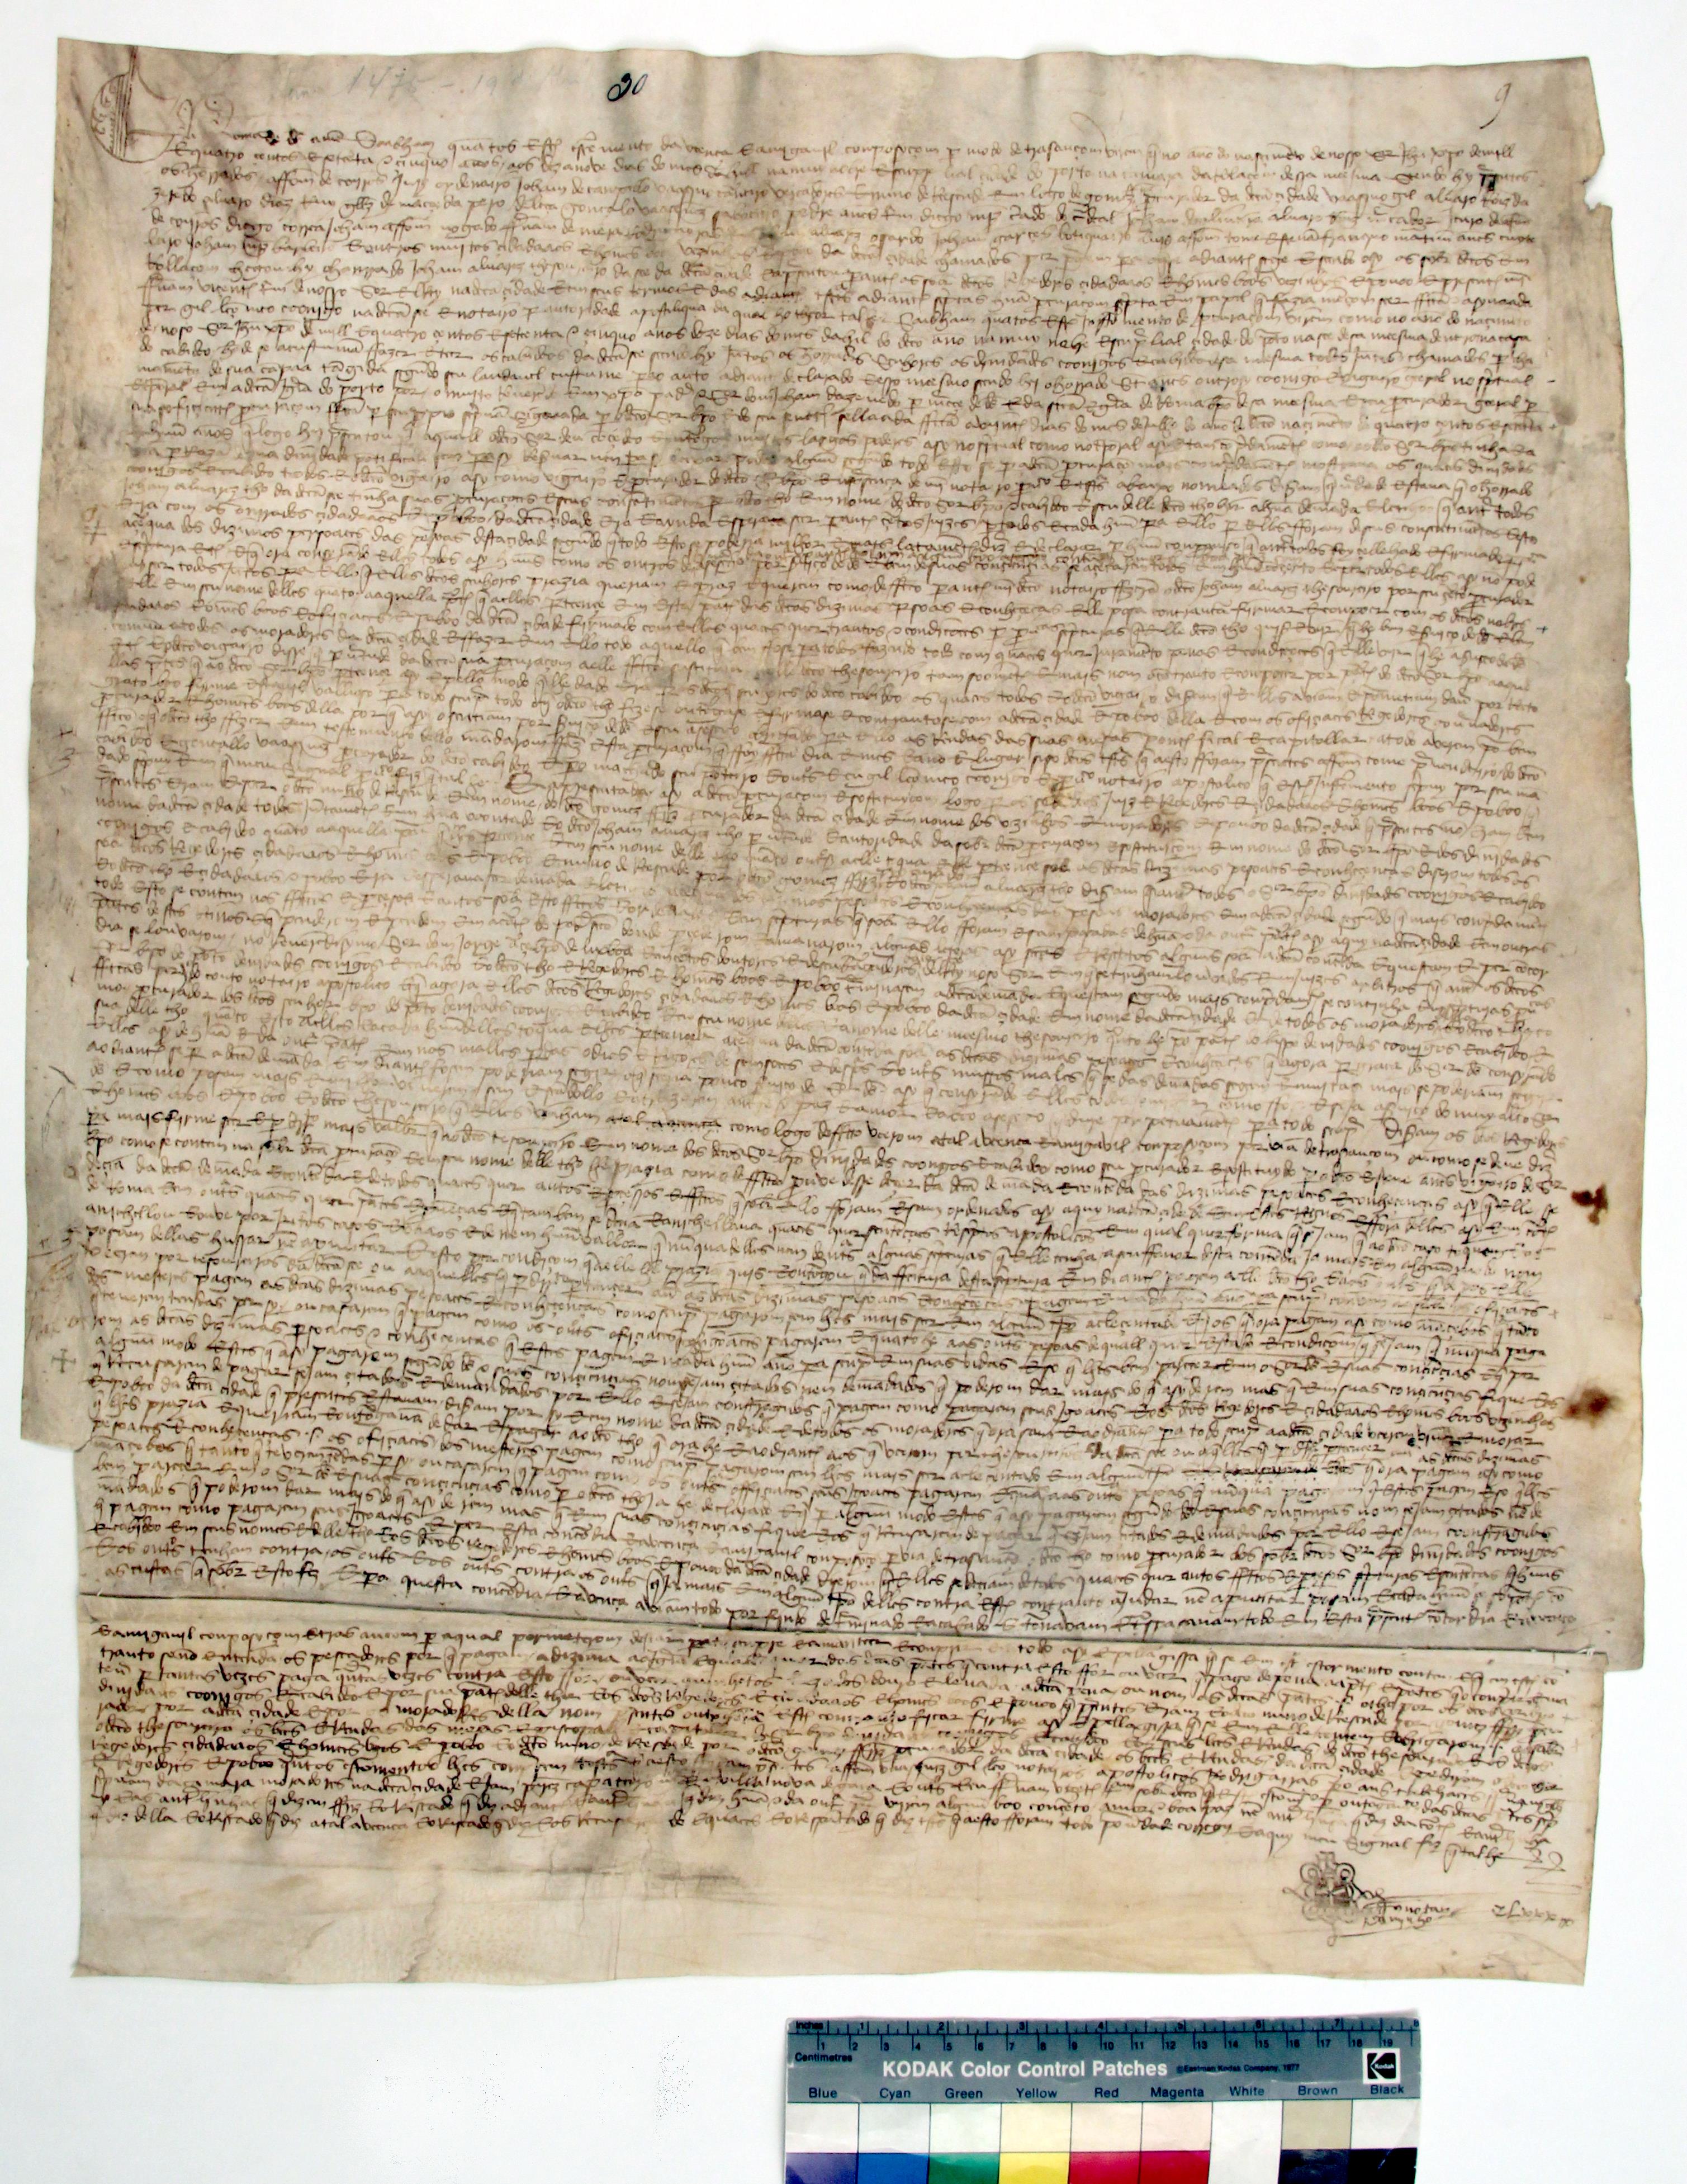 [Carta de avença e amigável composição estabelecida entre o bispo e o cabido do Porto e a cidade sobre o pagamento de dízimas]